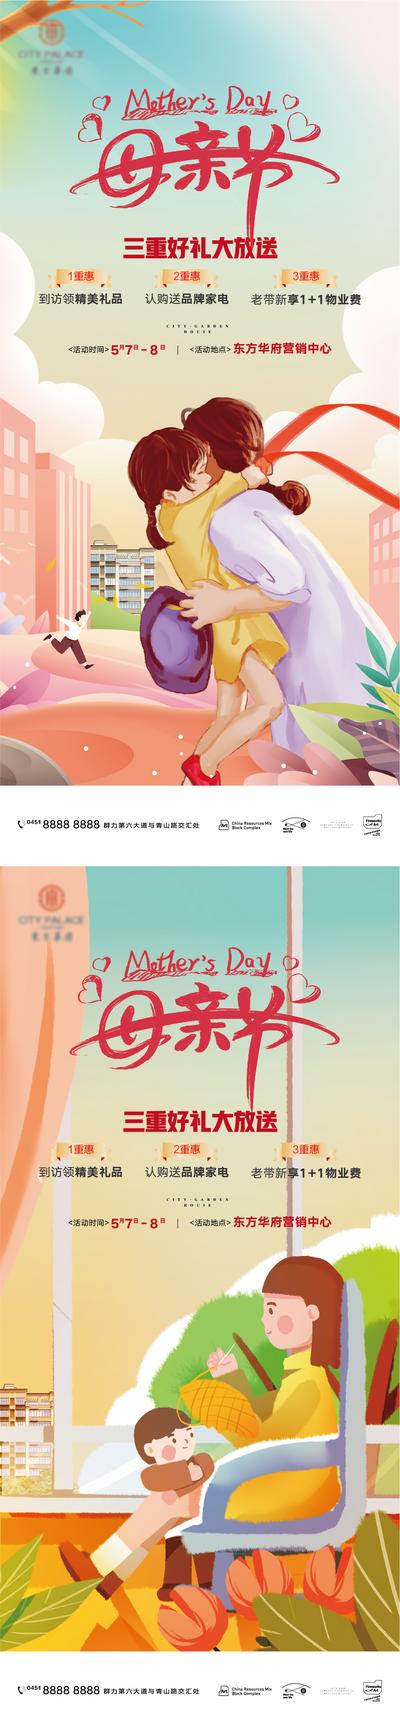 南门网 海报 公历节日 房地产 母亲节 母爱 三重礼 插画 系列